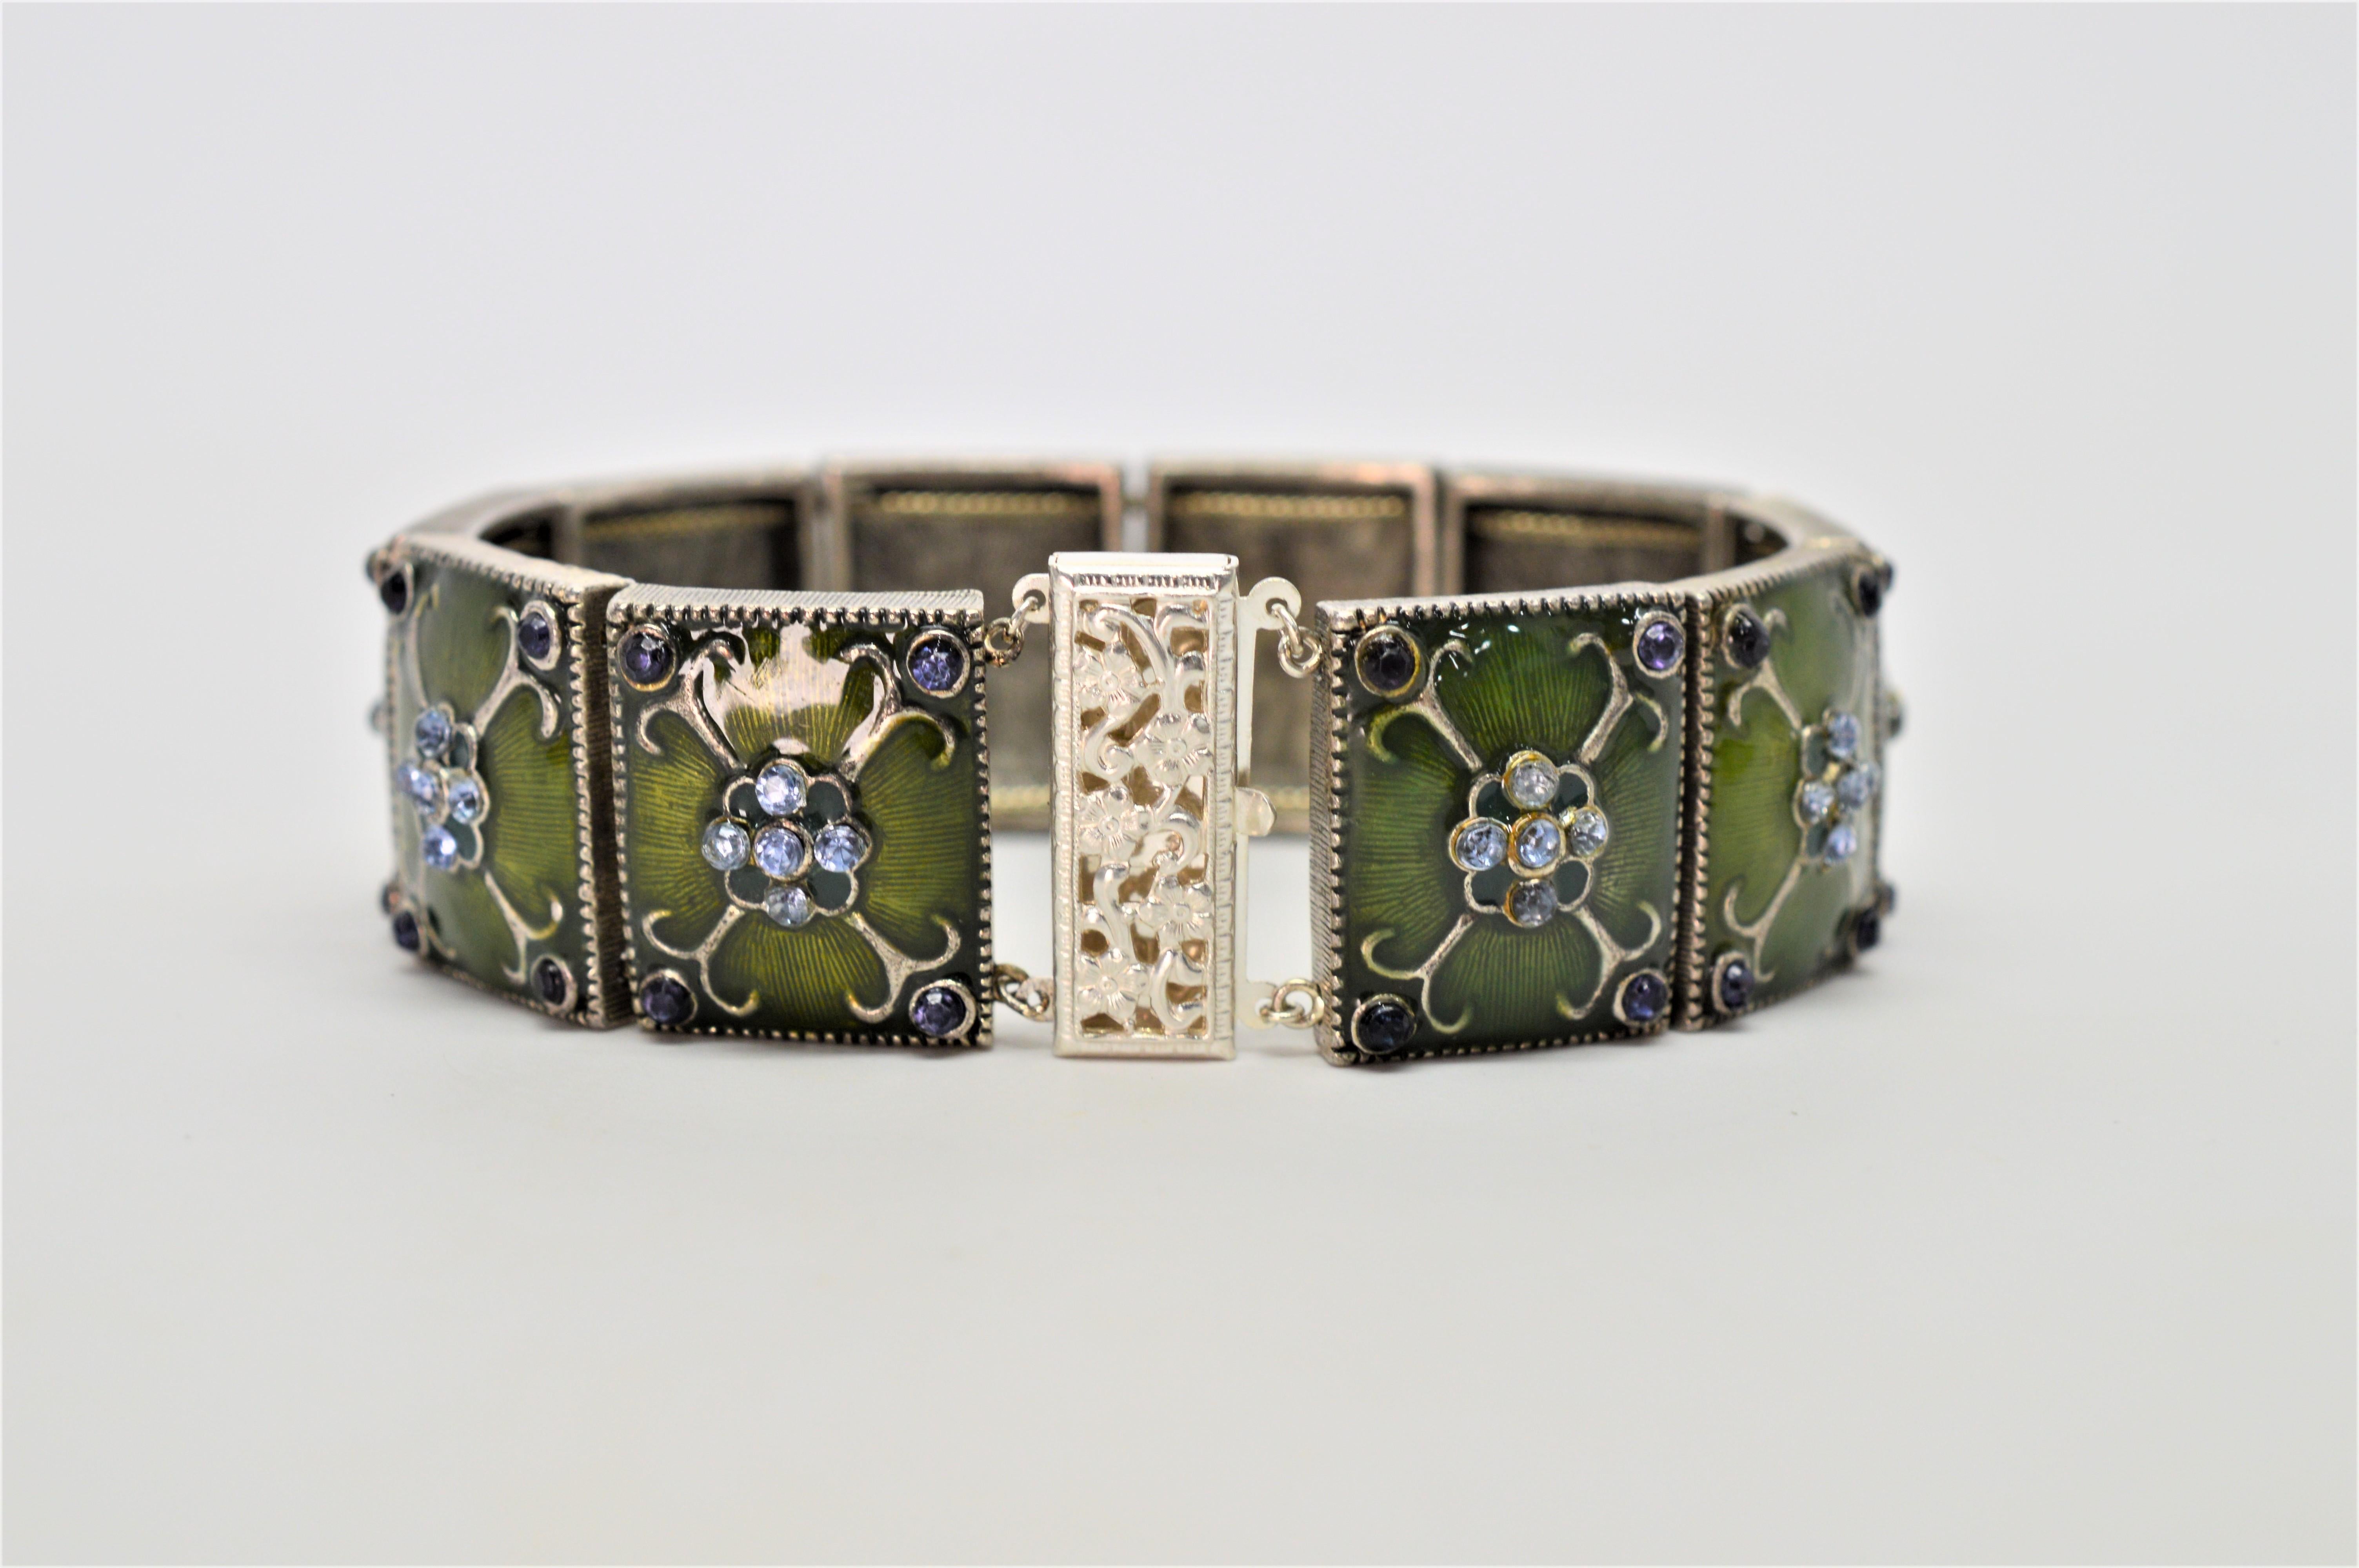 Ein ausgeprägtes Vintage-Stück, das seine ursprüngliche Ausstrahlung wiedererlangt hat und aus 10 moosgrünen, unedlen Metallplättchen besteht, die zu diesem 7-1/2-Zoll-Armband verbunden sind.
Jedes Kachelglied ist kunstvoll mit silberfarbenen